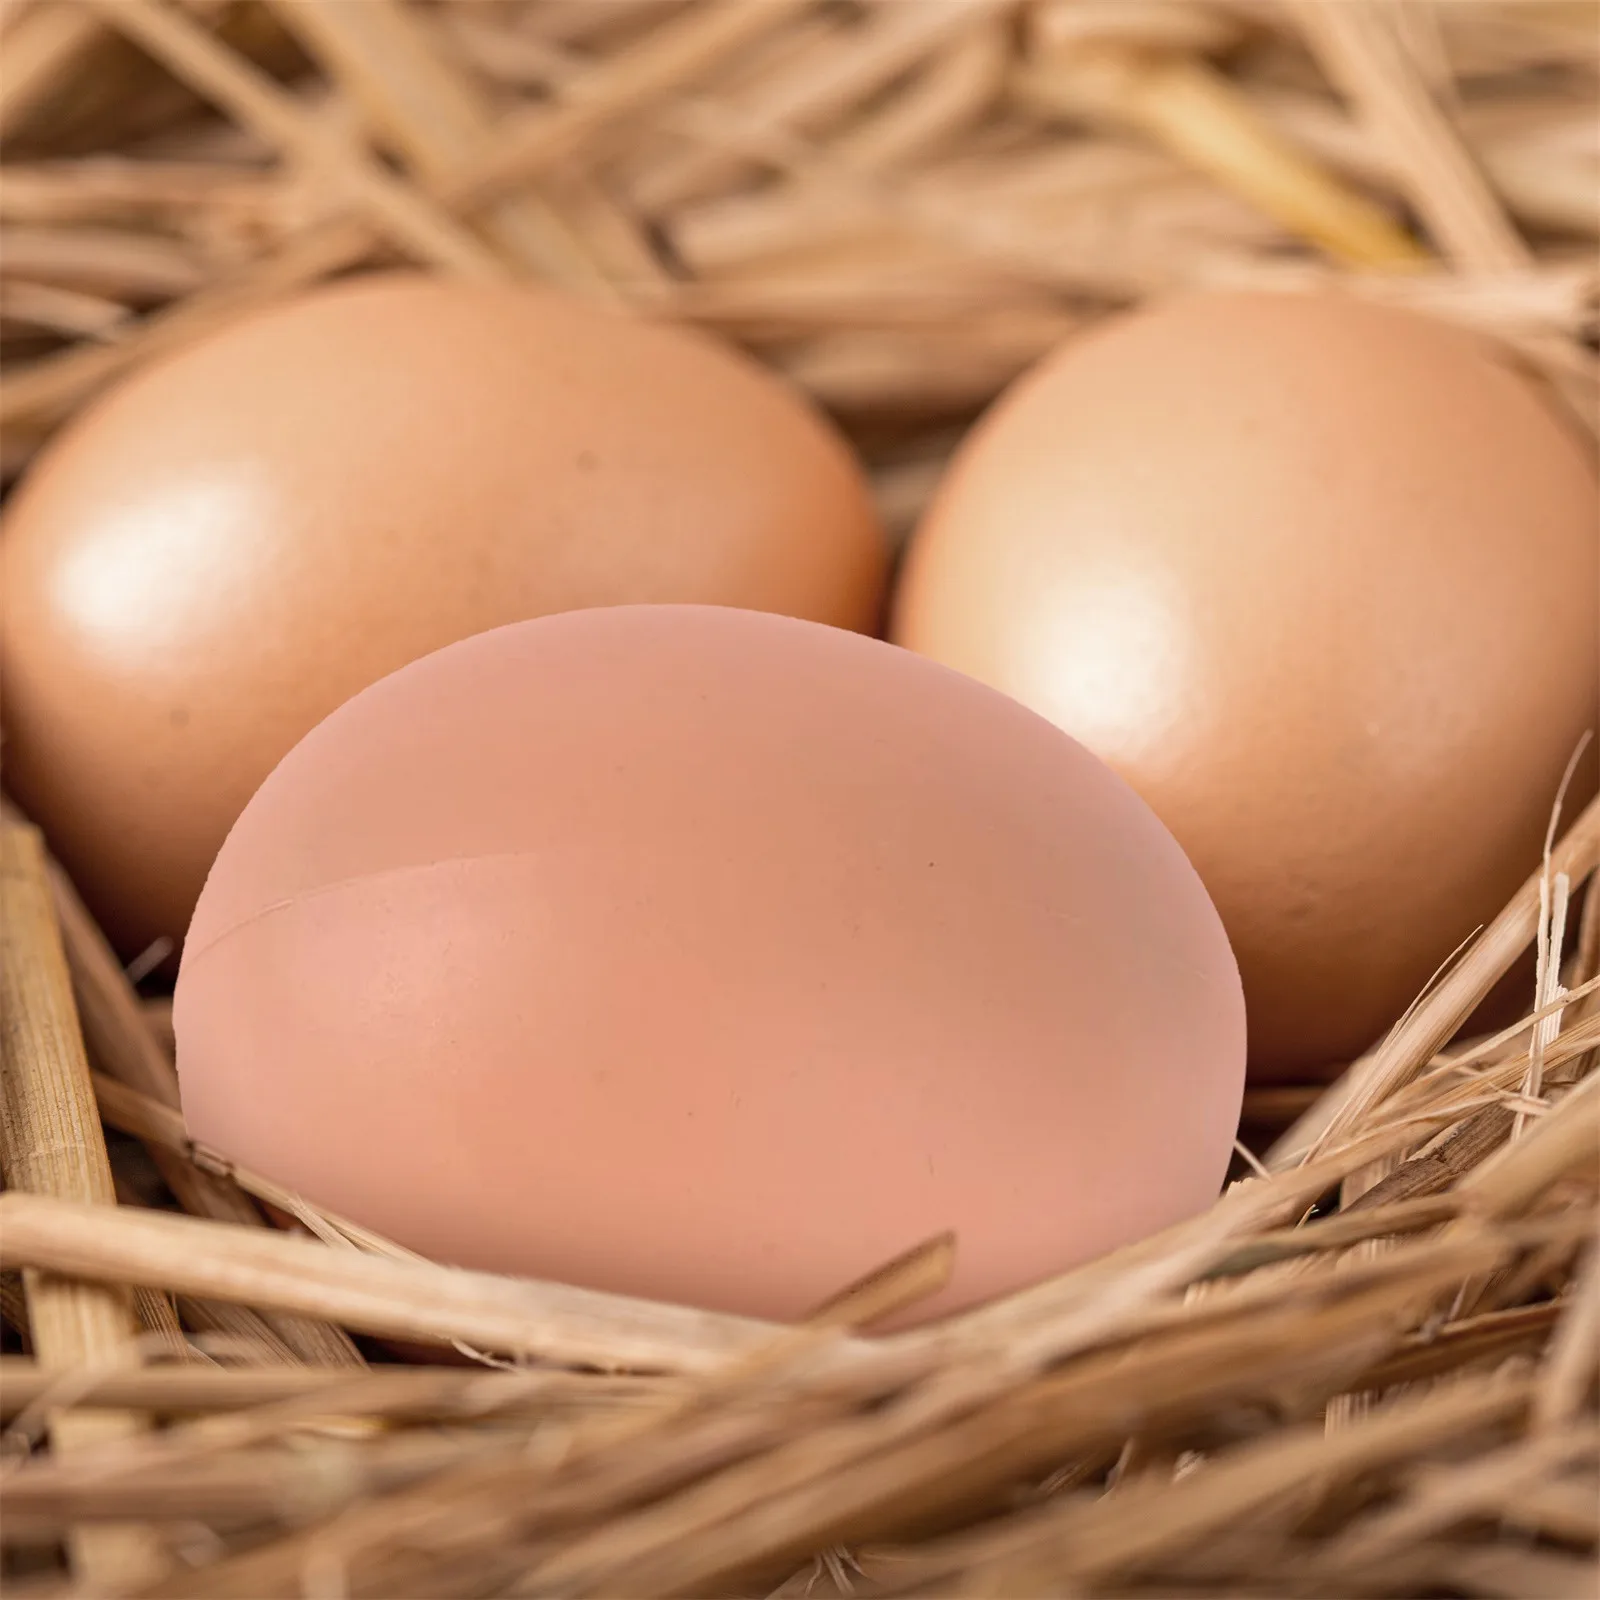 Недорогие искусственные деревянные курицы яйца с рисунком детские развивающие